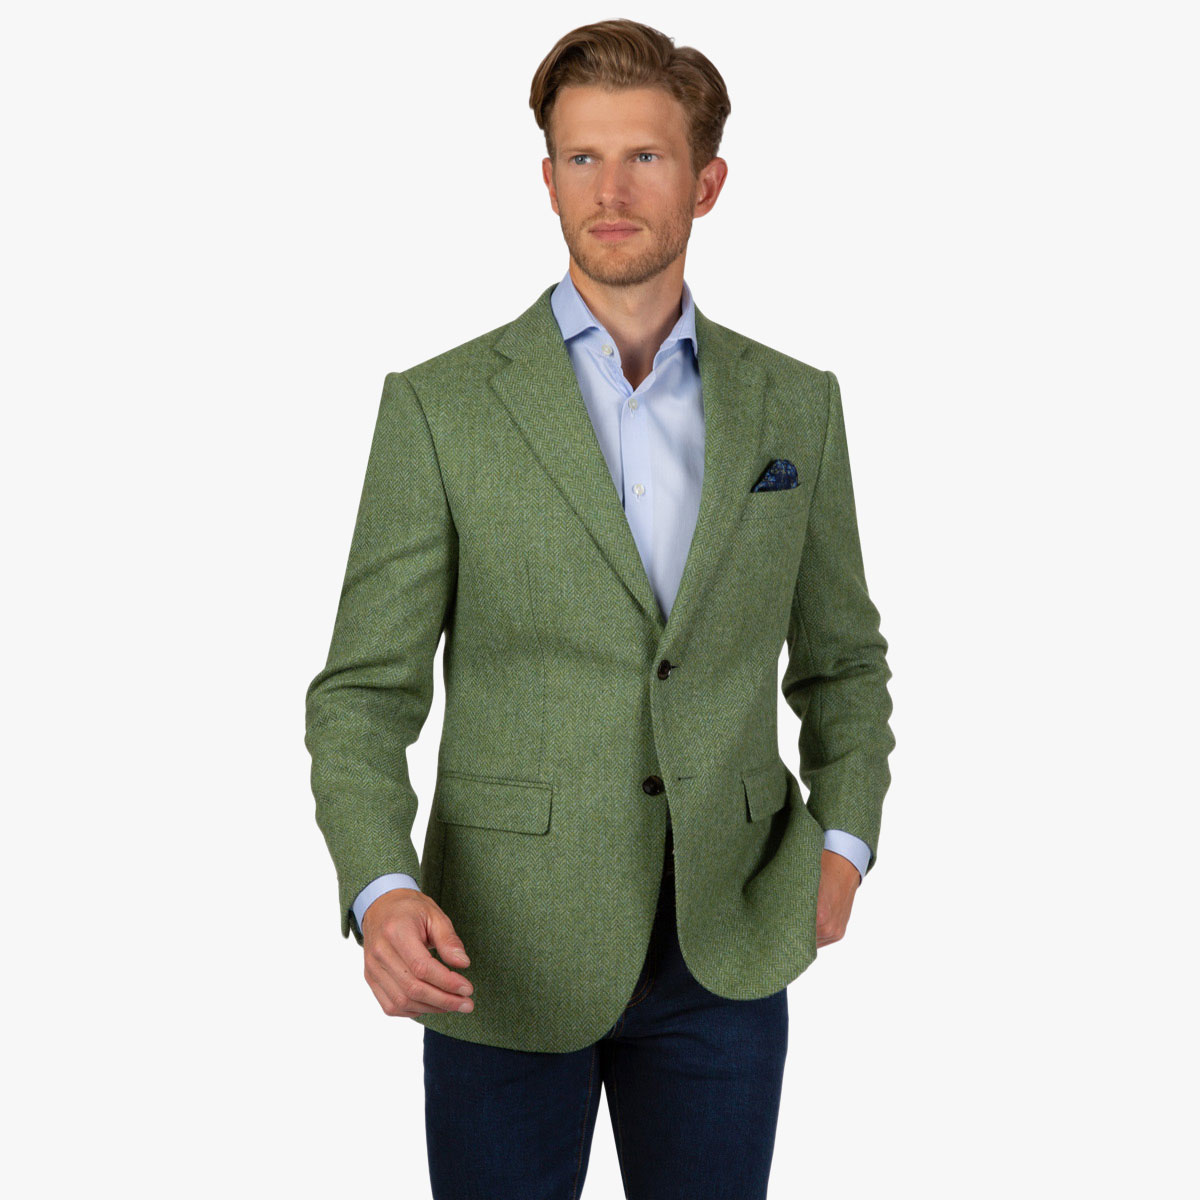 Sakko aus Tweed in grün und hellblau